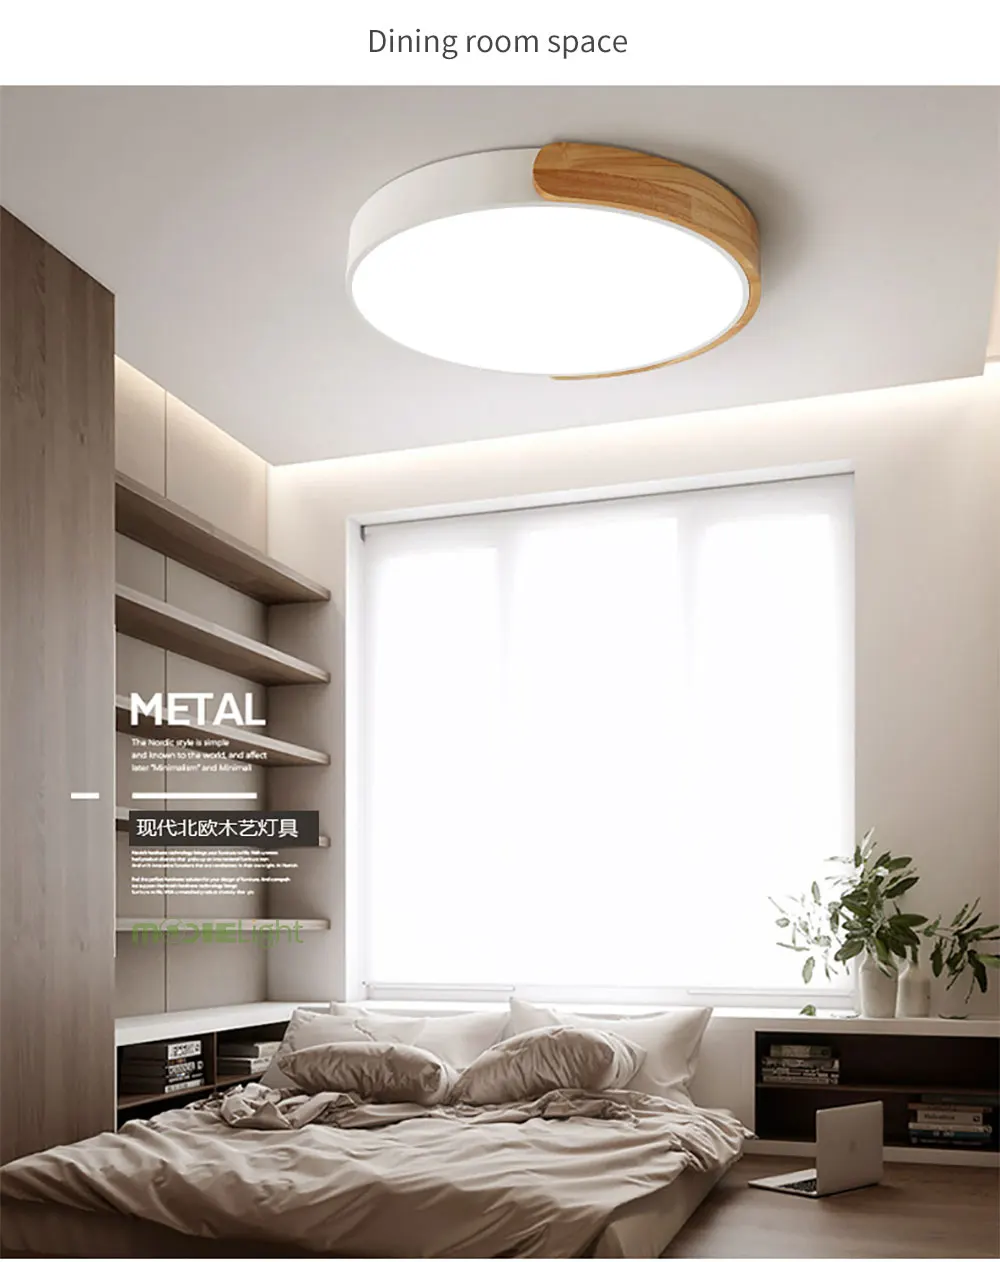 Круглый Деревянный светодиодный потолочный светильник с пультом дистанционного управления, цветной потолочный светильник для гостиной, столовой, кухни